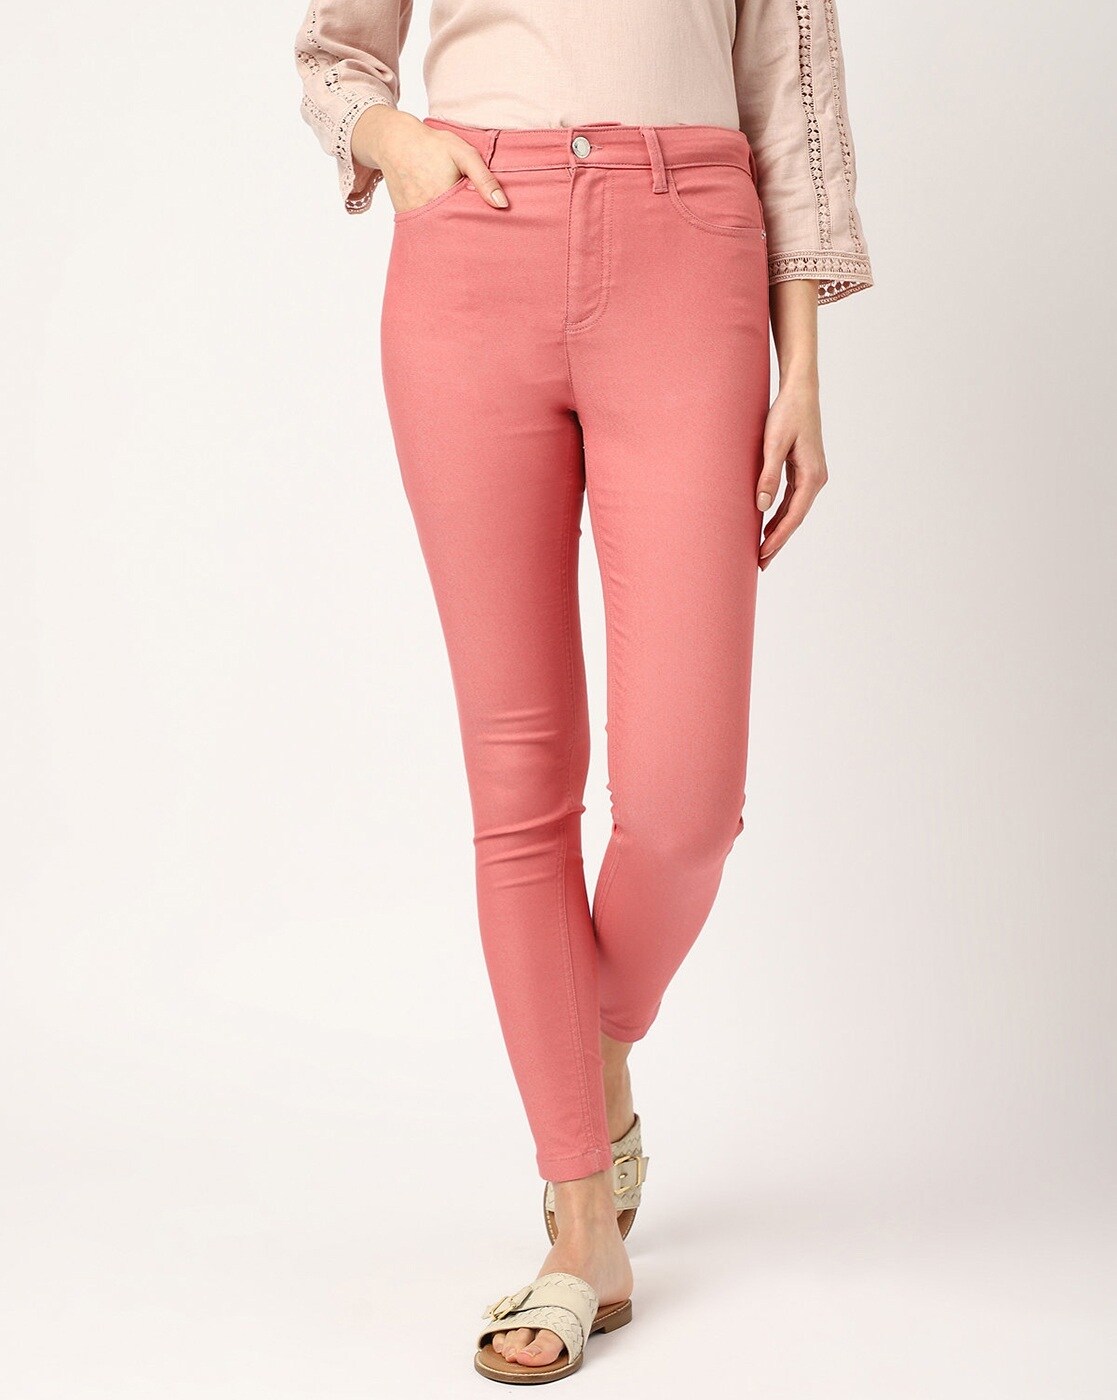 at tilbagetrække Fjern Forslag Buy Pink Jeans & Jeggings for Women by Marks & Spencer Online | Ajio.com